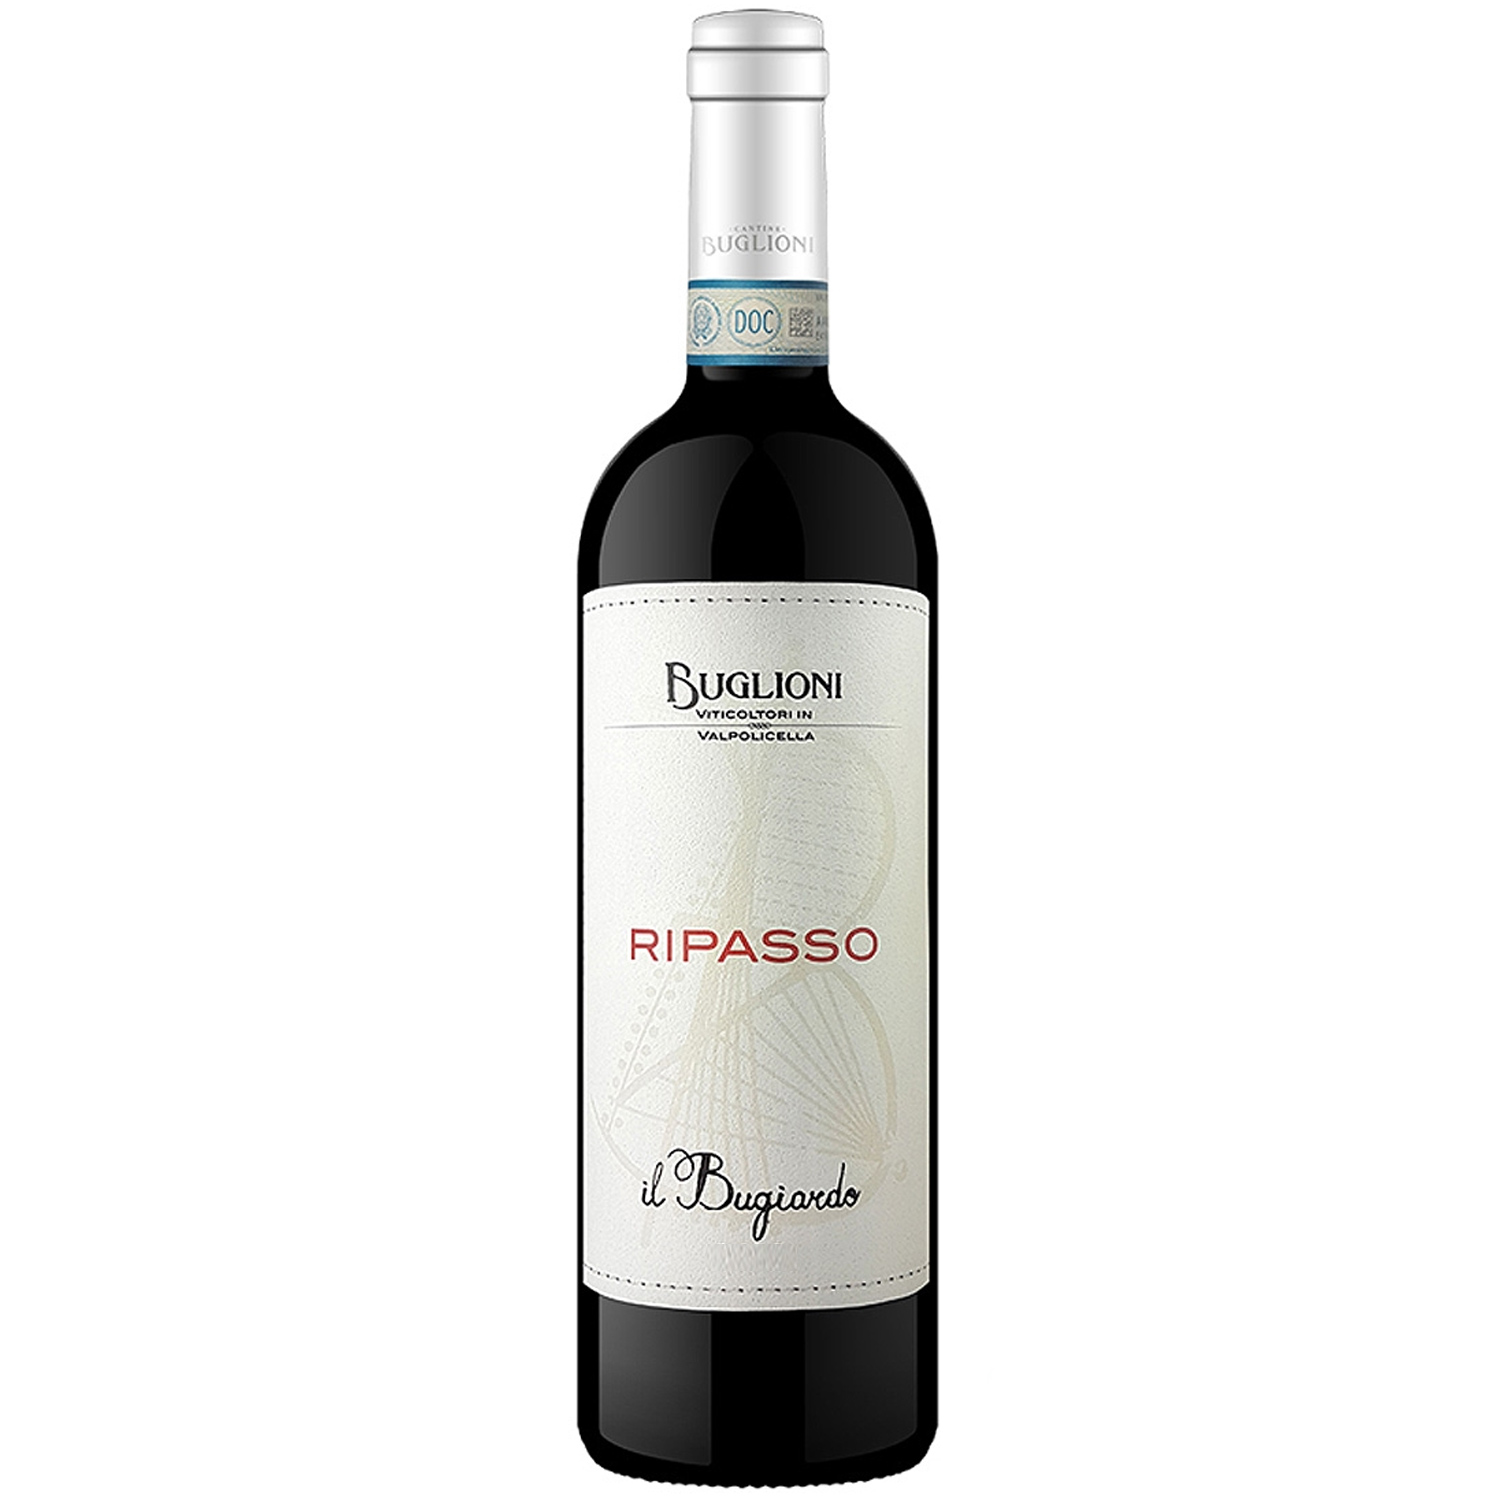 Italienischer Rotwein Buglioni Ripasso Il Bugiardo 2018 | Vinum Nobile